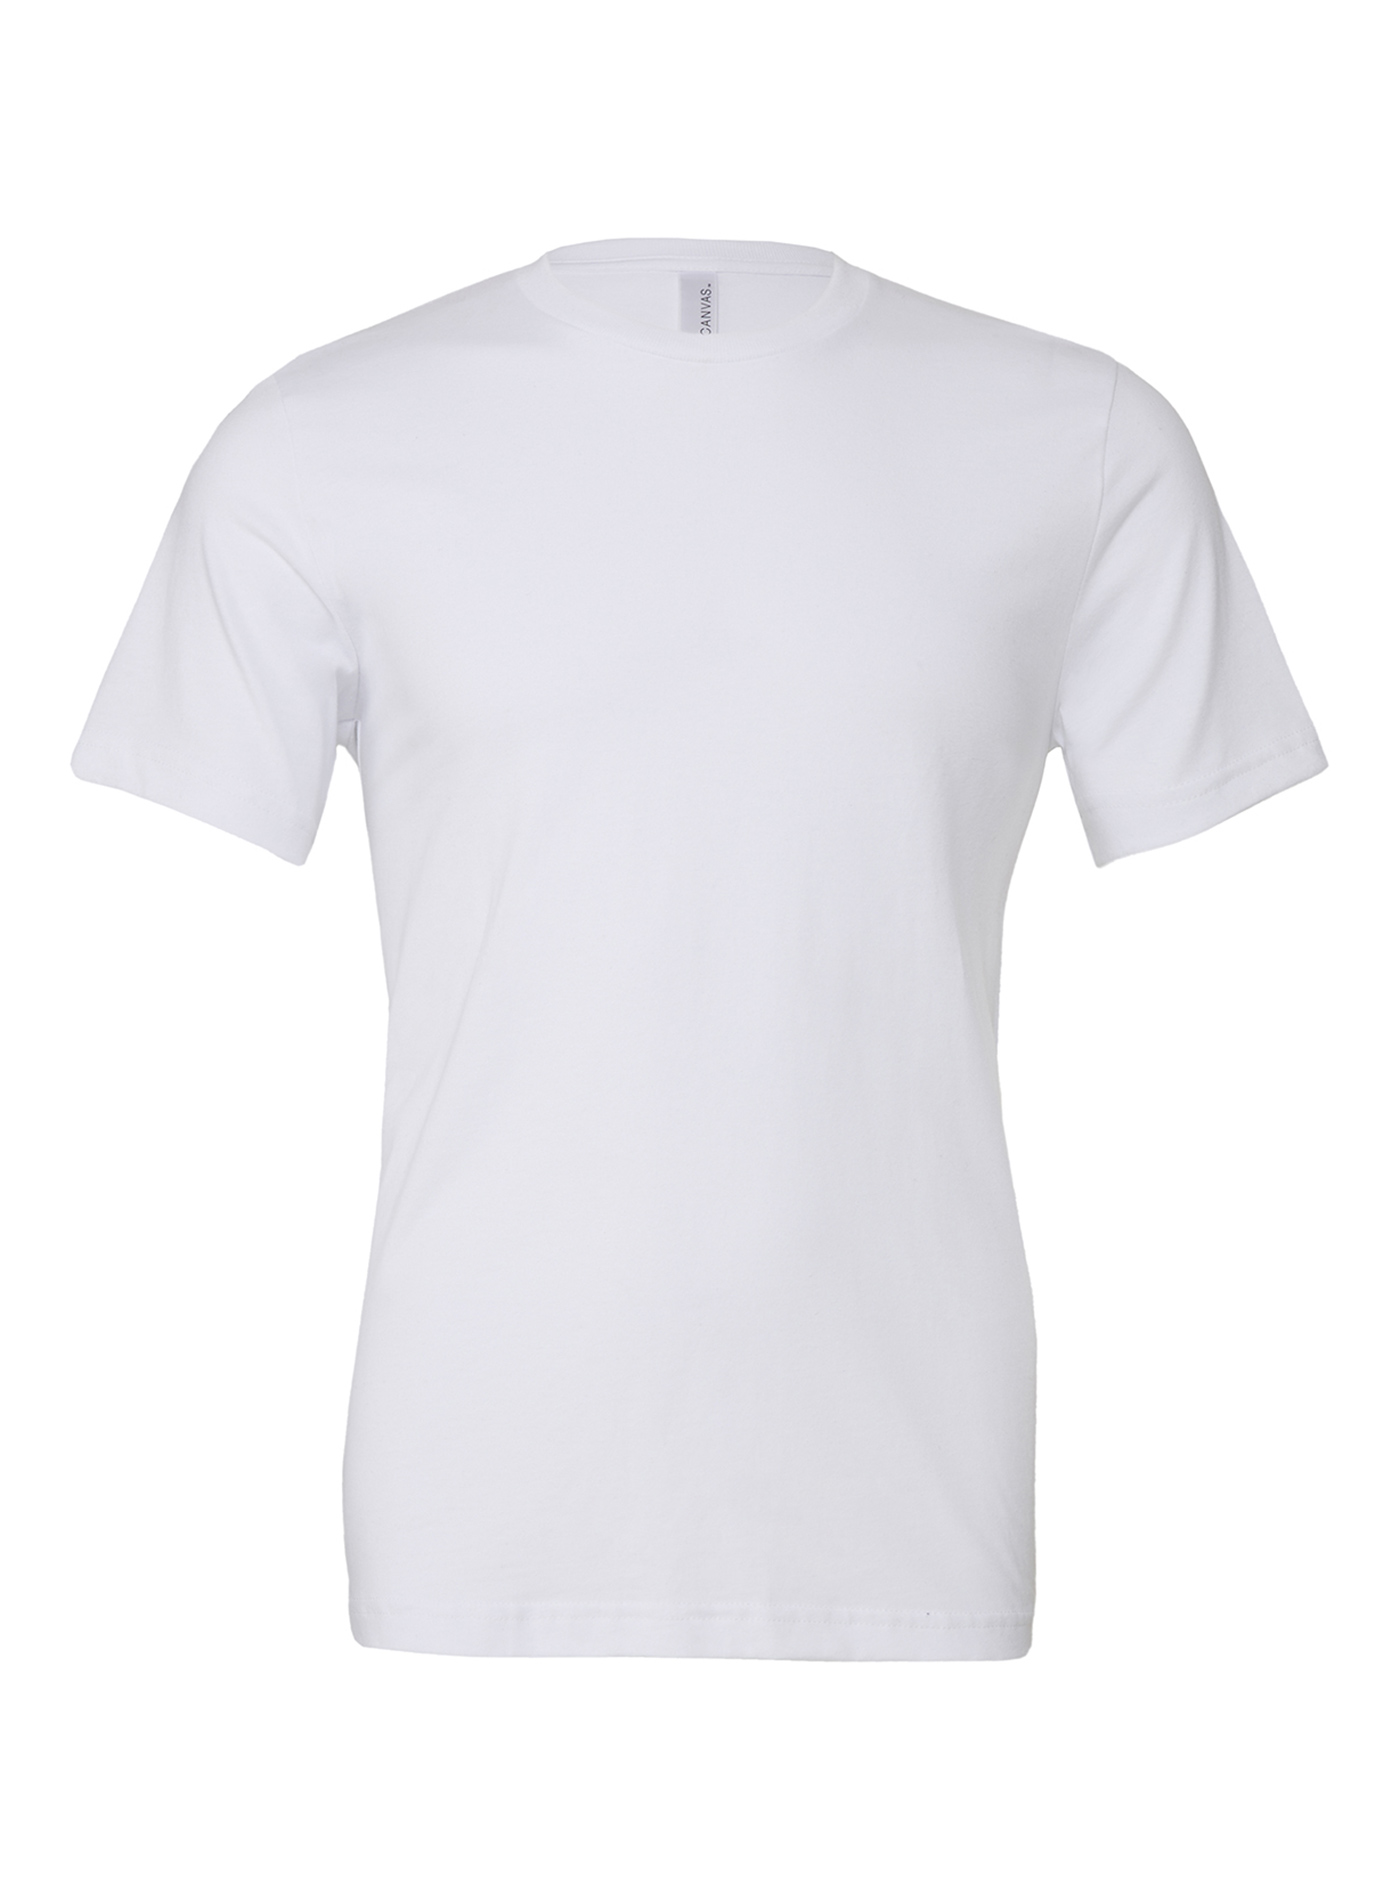 Unisex tričko Bella + Canvas Jersey - Bílá XL